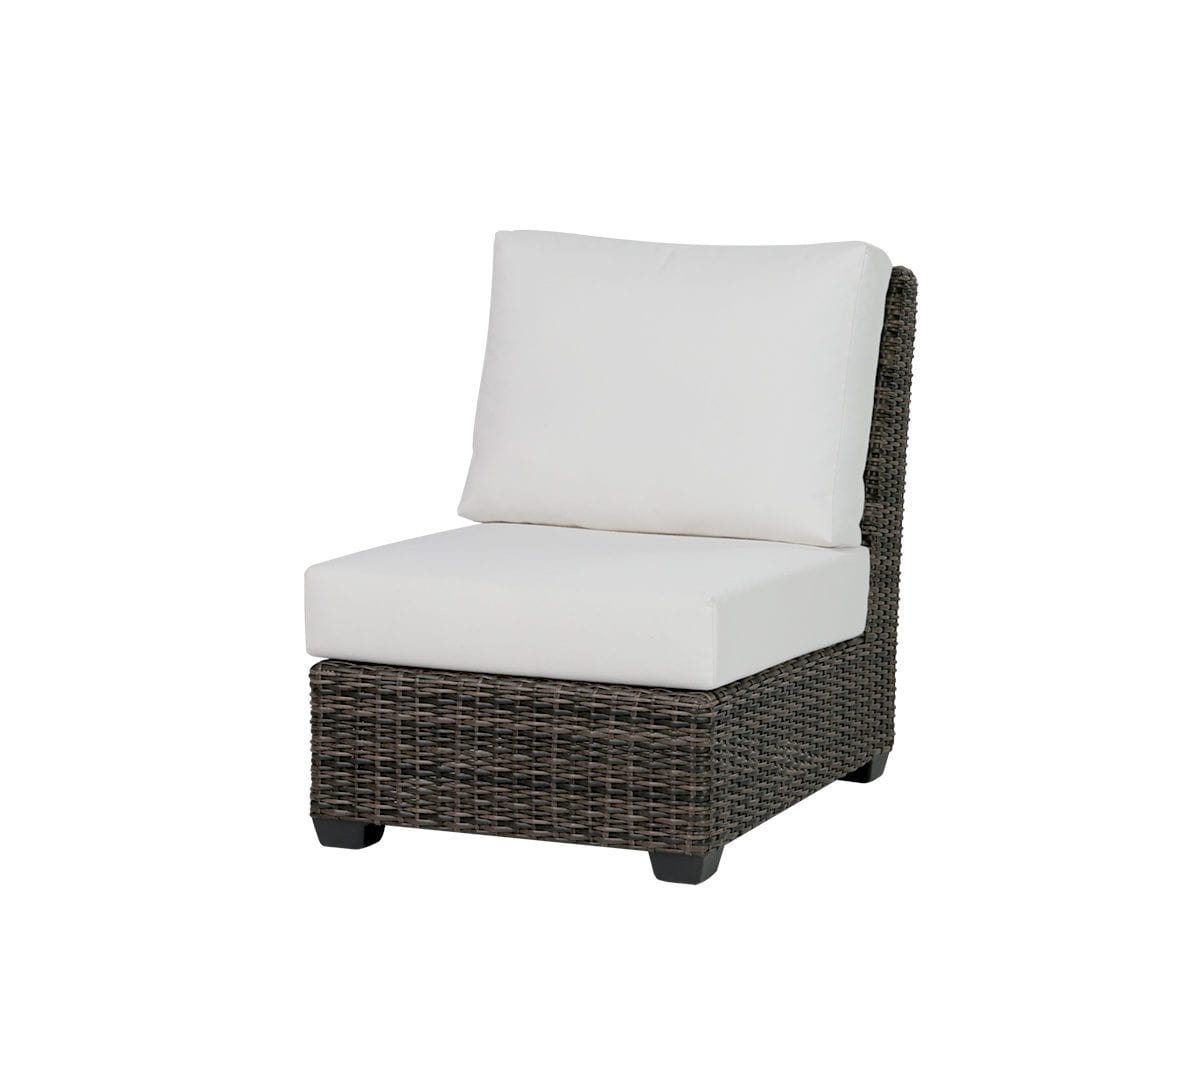 Ratana wicker Coral Gables Armless Chair